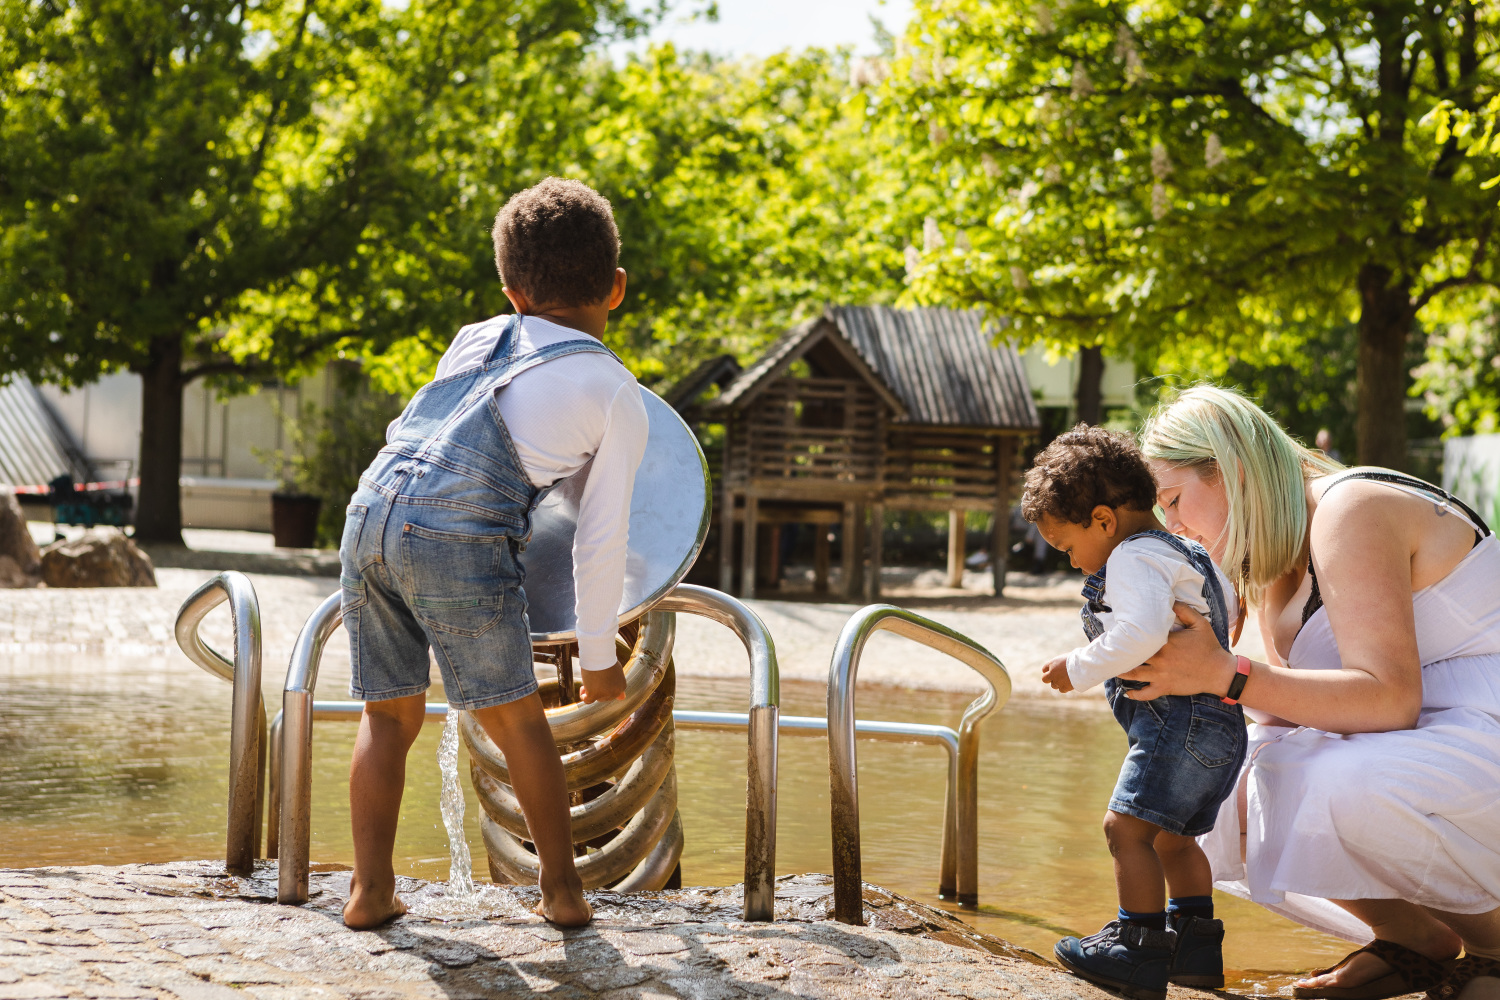 Zwei kleine Jungs spielen am Wasserspielplatz. Eine Frau mit blonden Haare hält den kleineren der beiden Jungen gerade fest. Im Hintergrund grünbelaubte Bäume